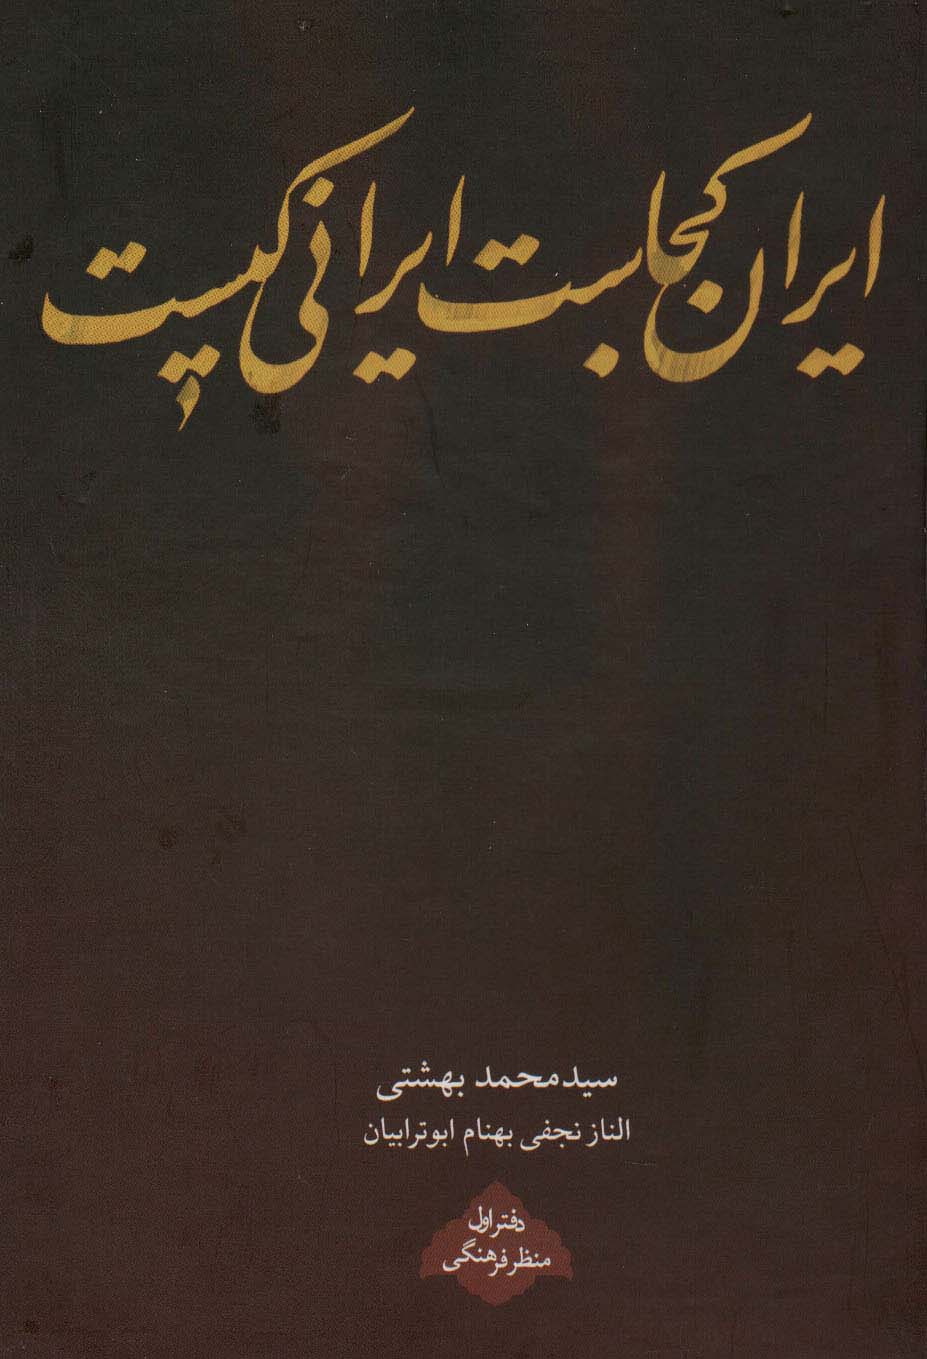  کتاب ایران کجاست ایرانی کیست